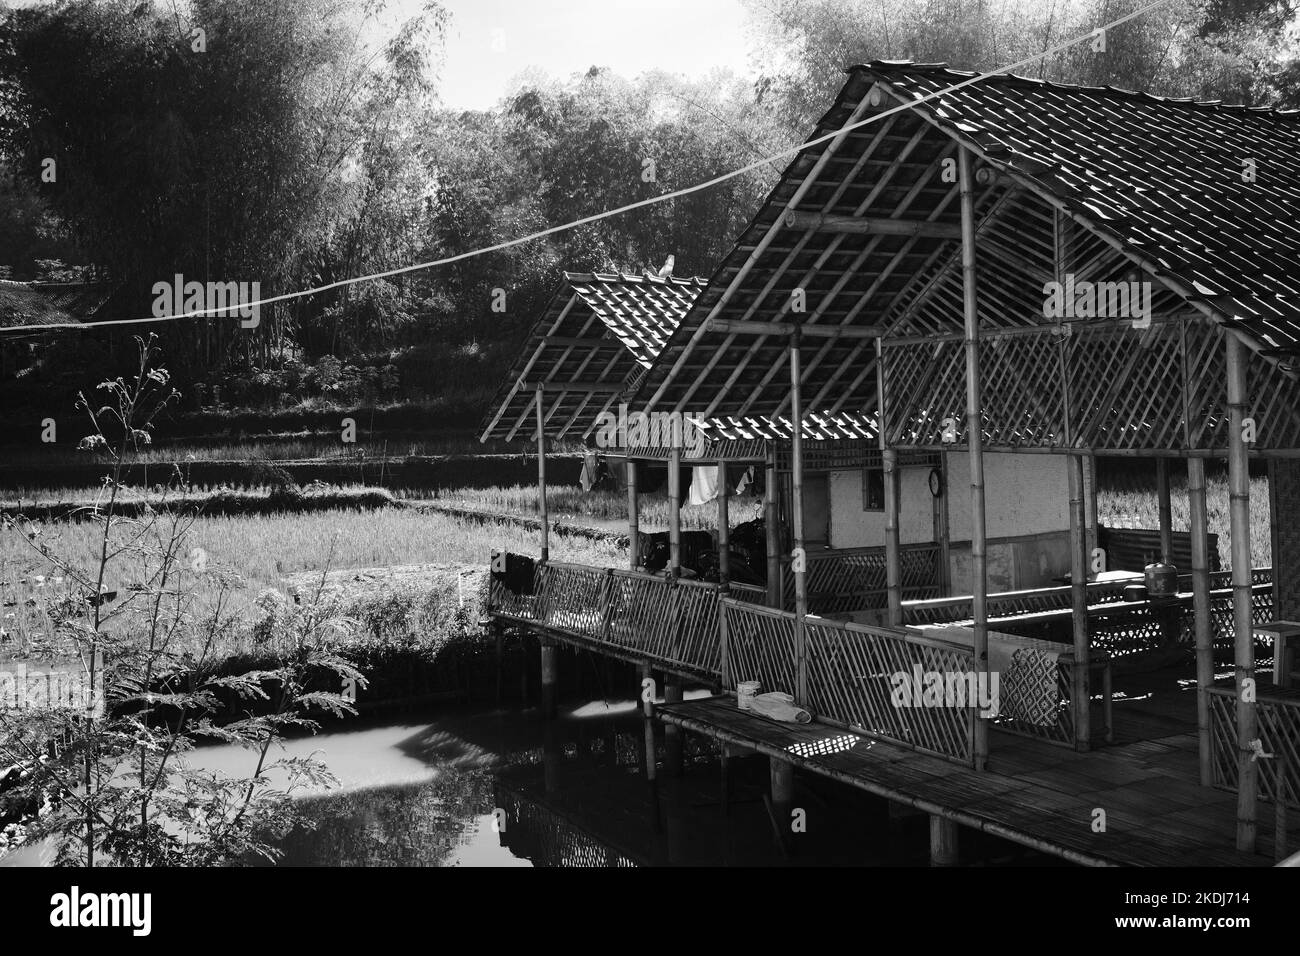 Photo noir et blanc, photo monochrome d'une cabane en bambou au bord d'un champ de riz dans la région de Cikancung - Indonésie Banque D'Images